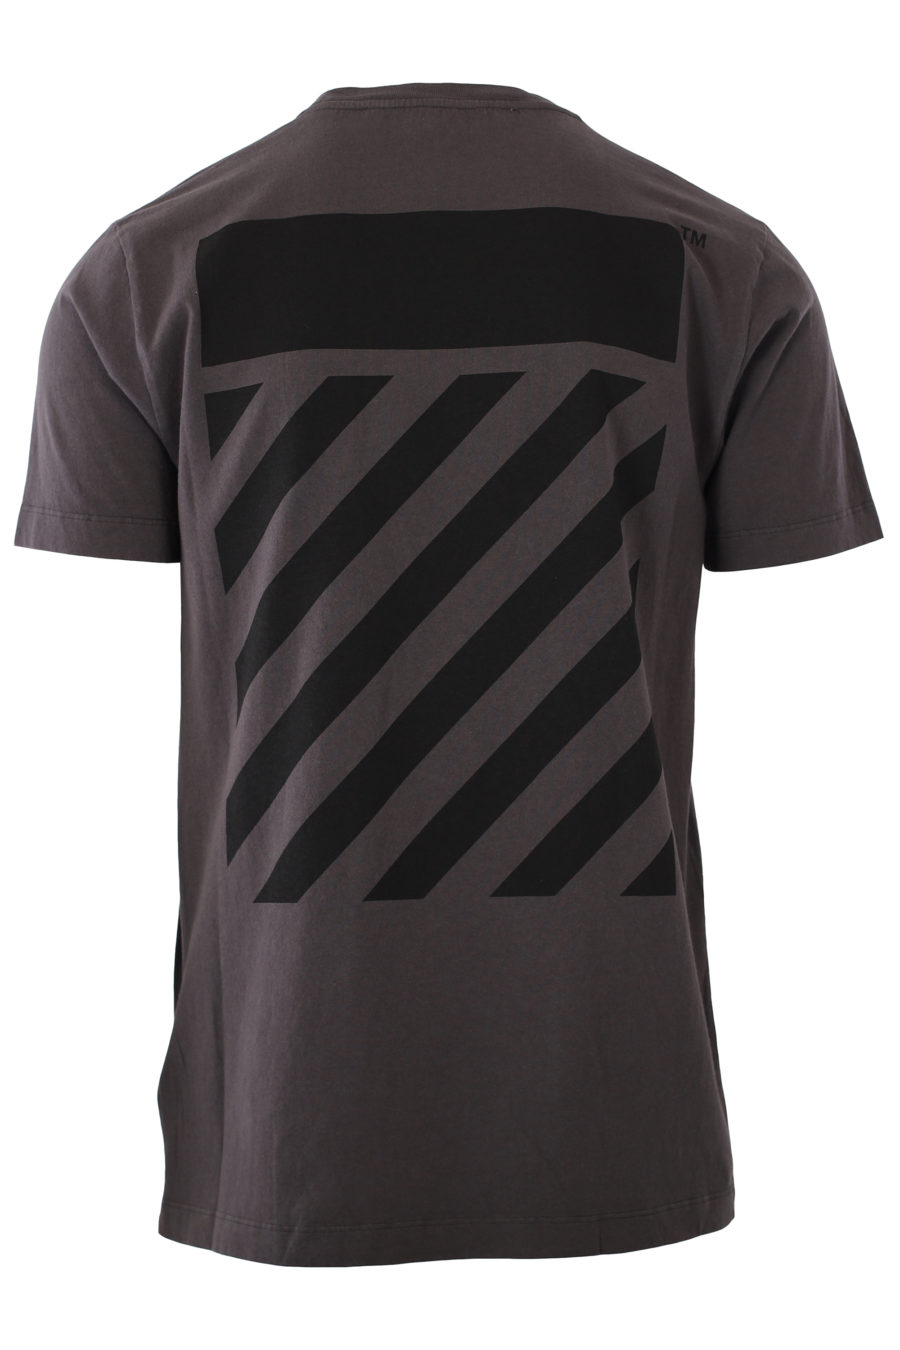 Camiseta gris con logo grande negro - IMG 2346